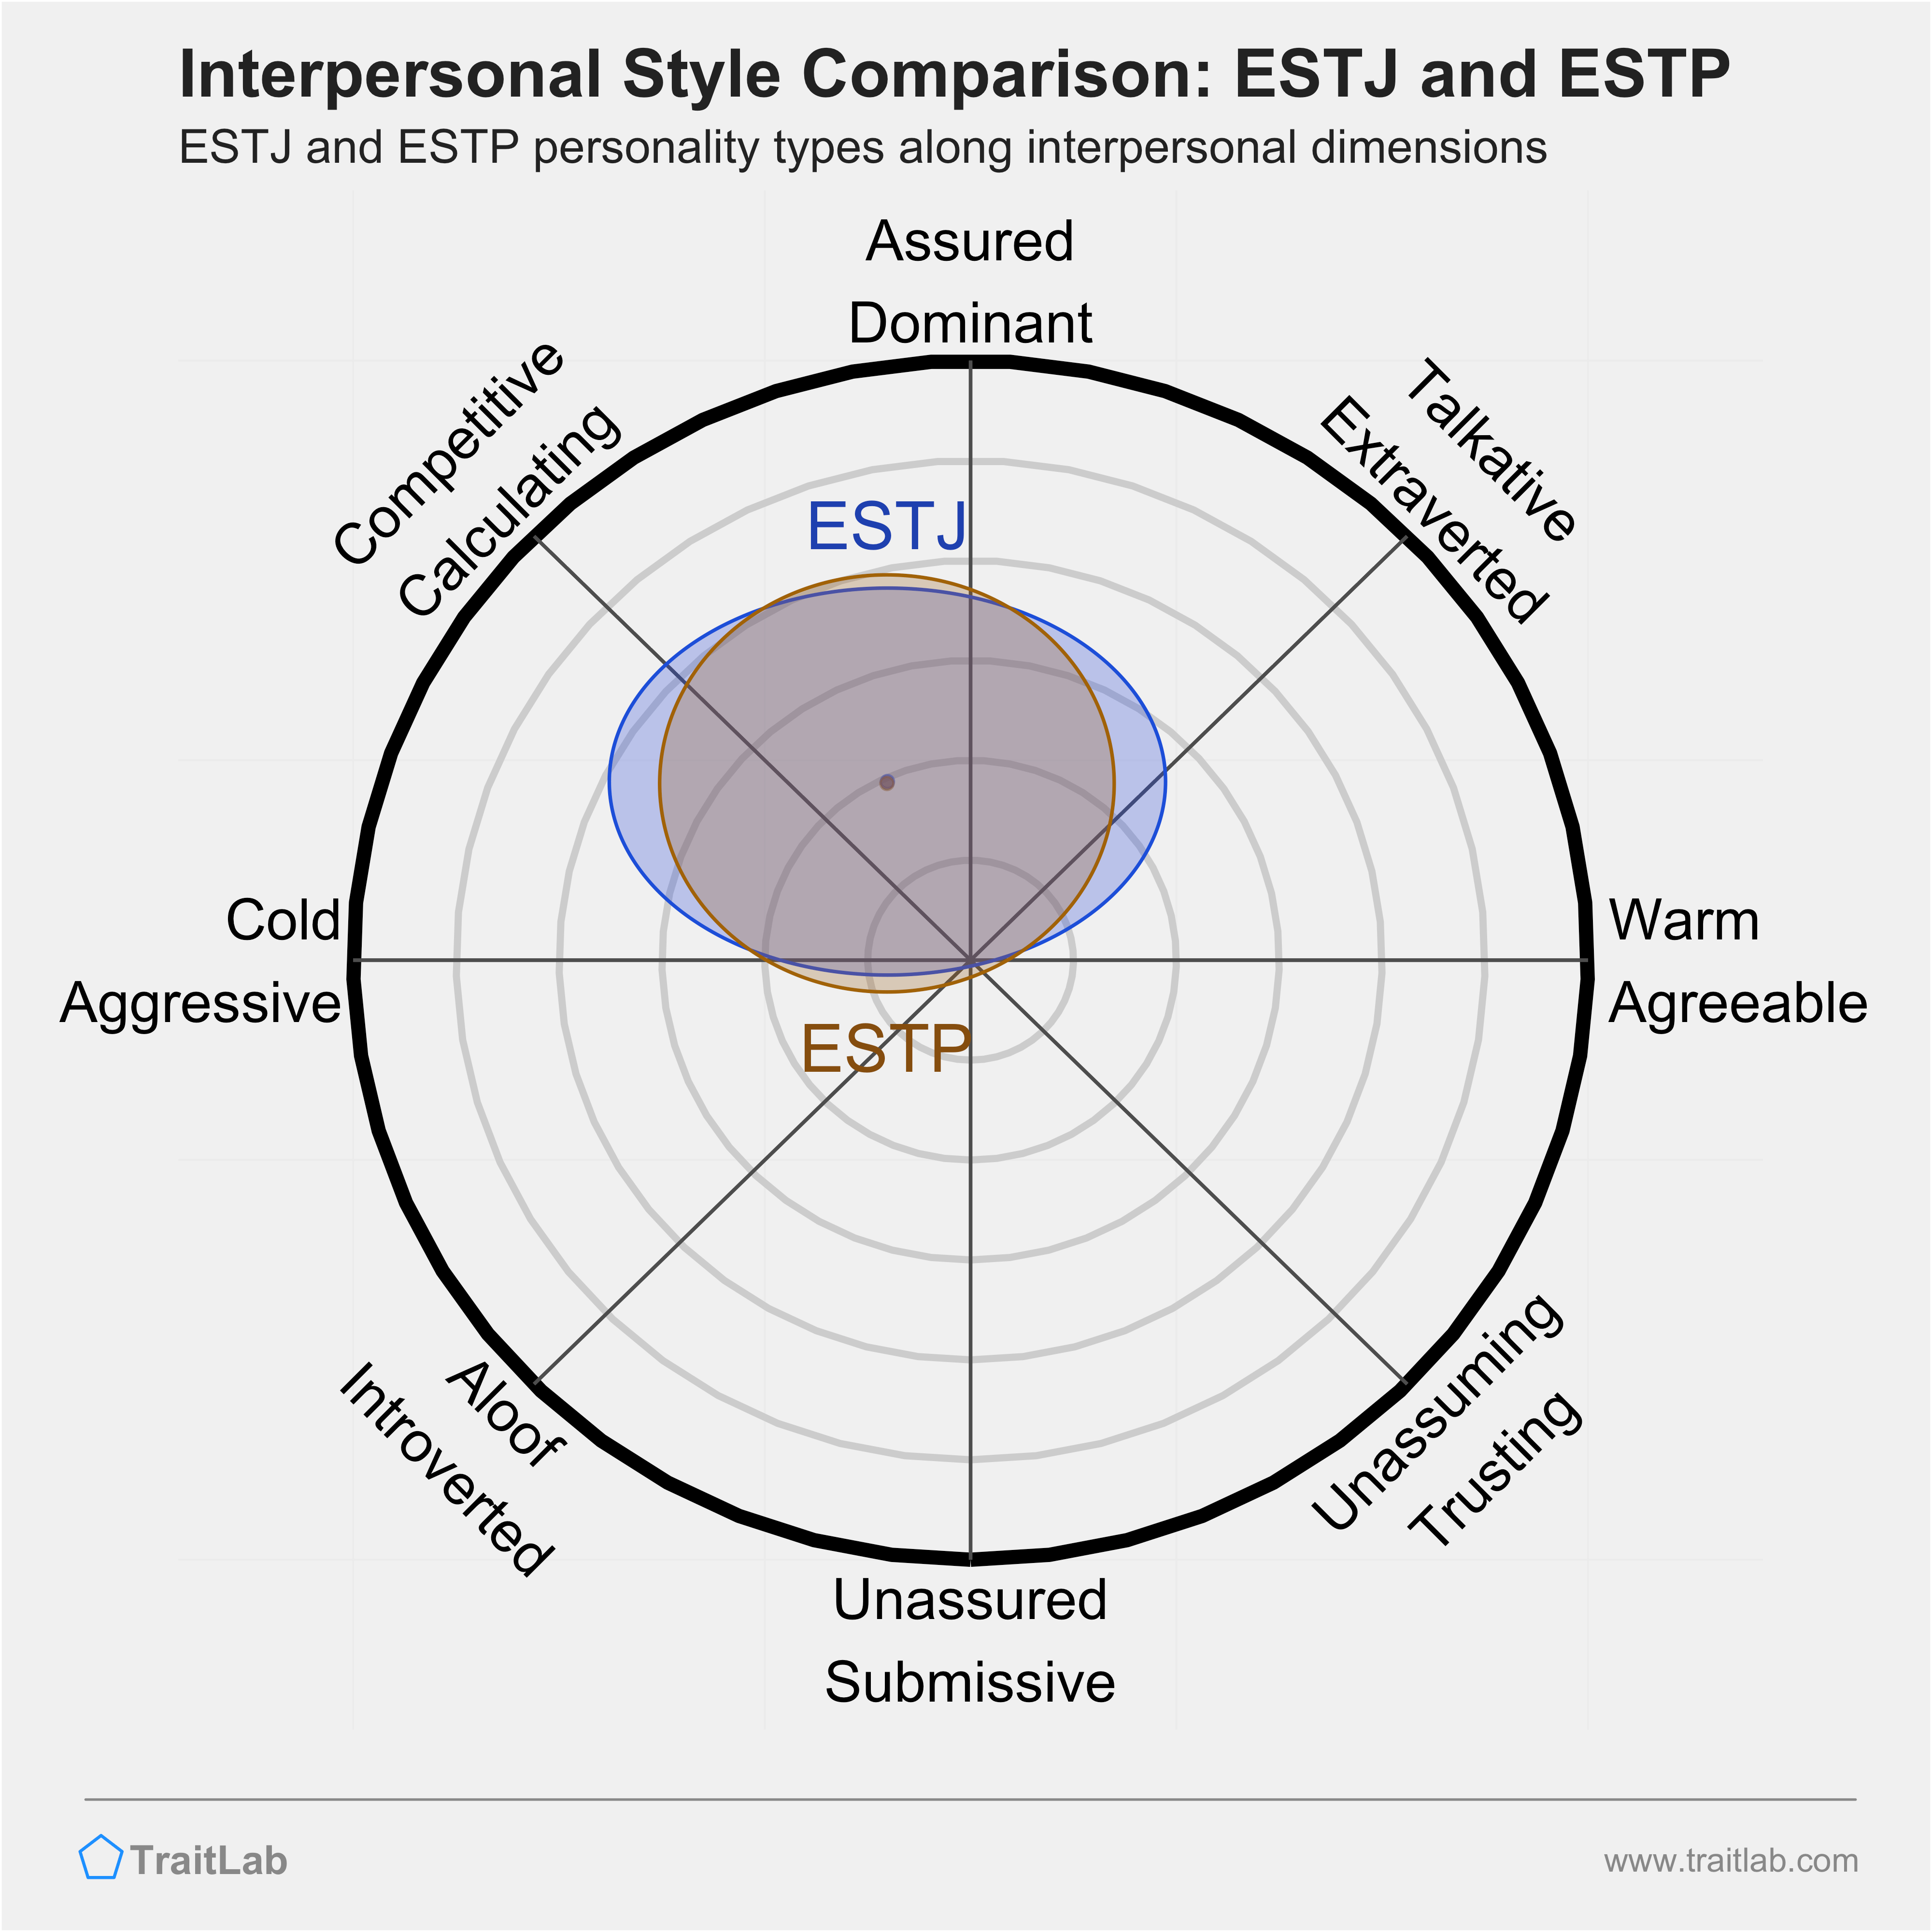 ESTJ and ESTP comparison across interpersonal dimensions